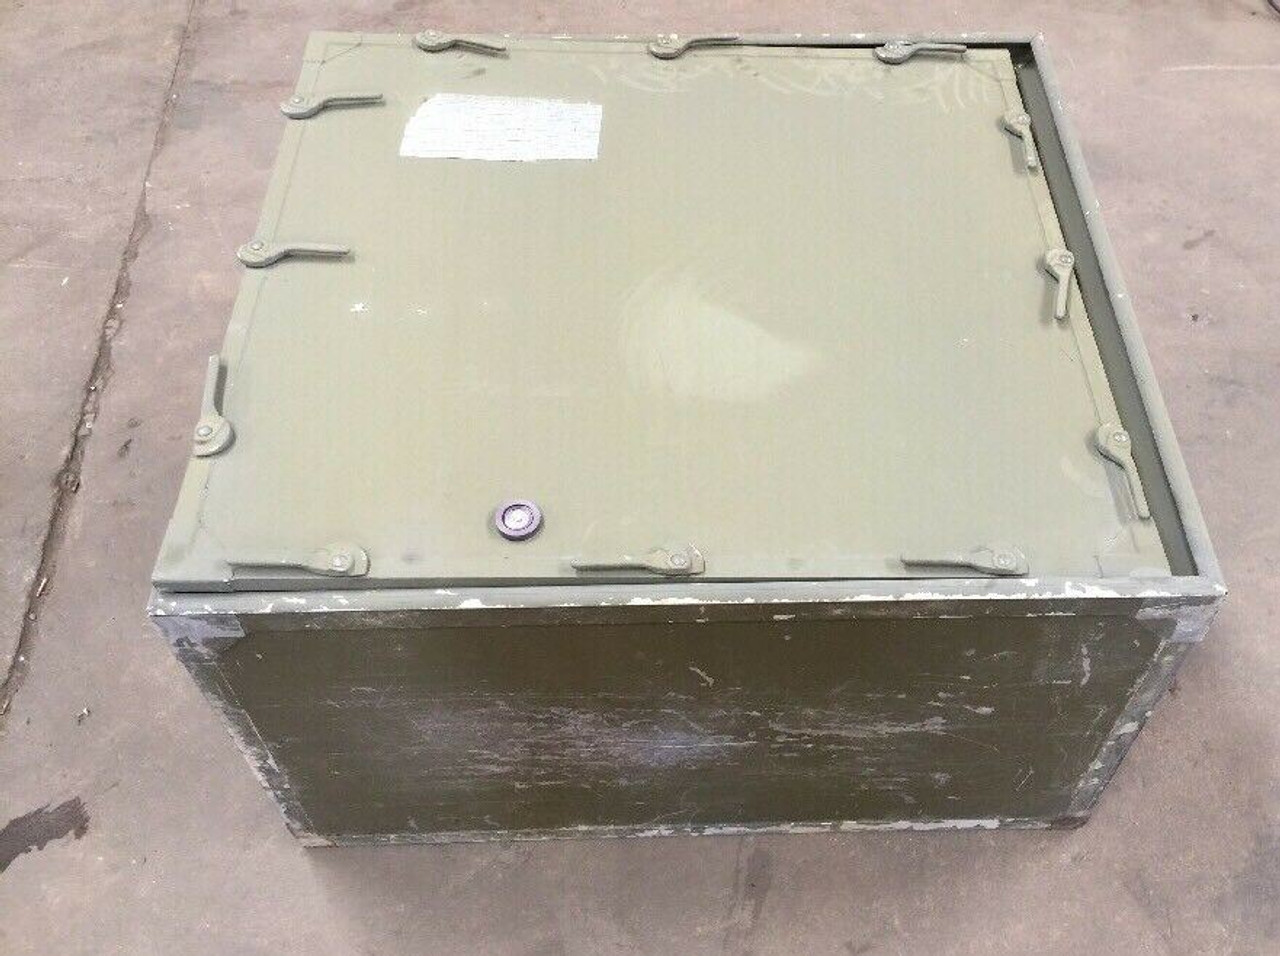 Vietnam Era Aluminum Case with Cover - 2.8 ft. L x 2.5 ft. W x 1.7 ft D